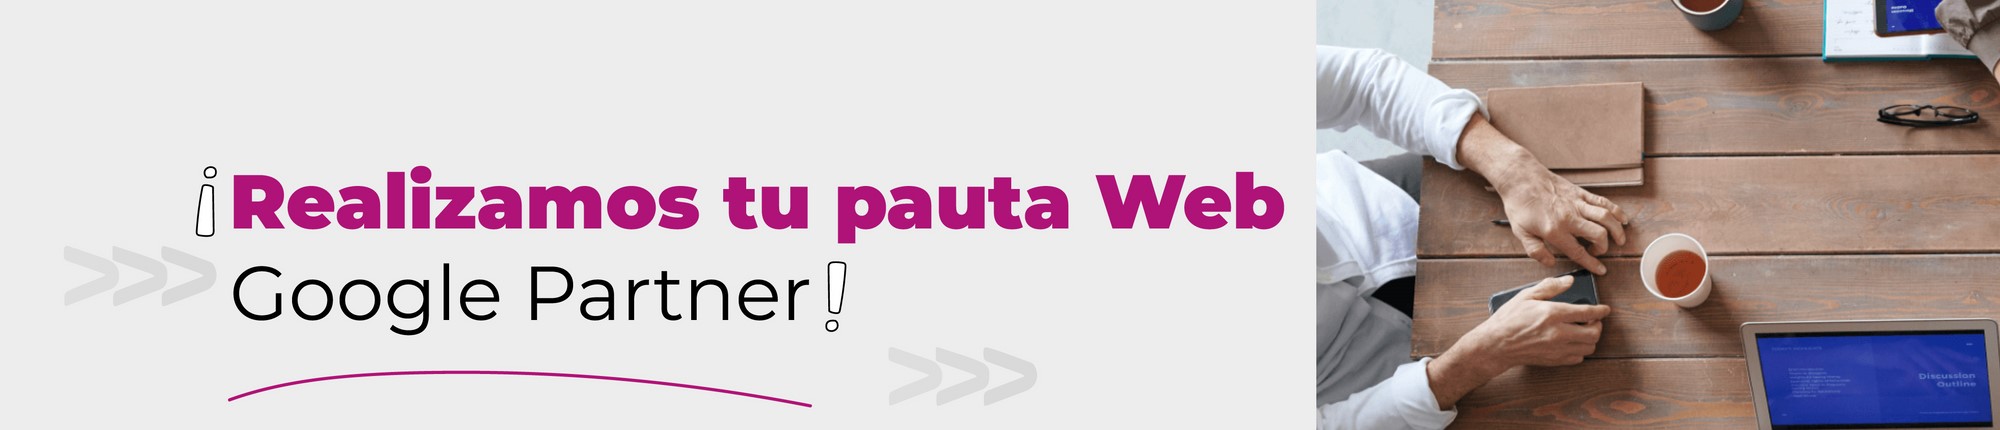 pauta-web-dominios.png